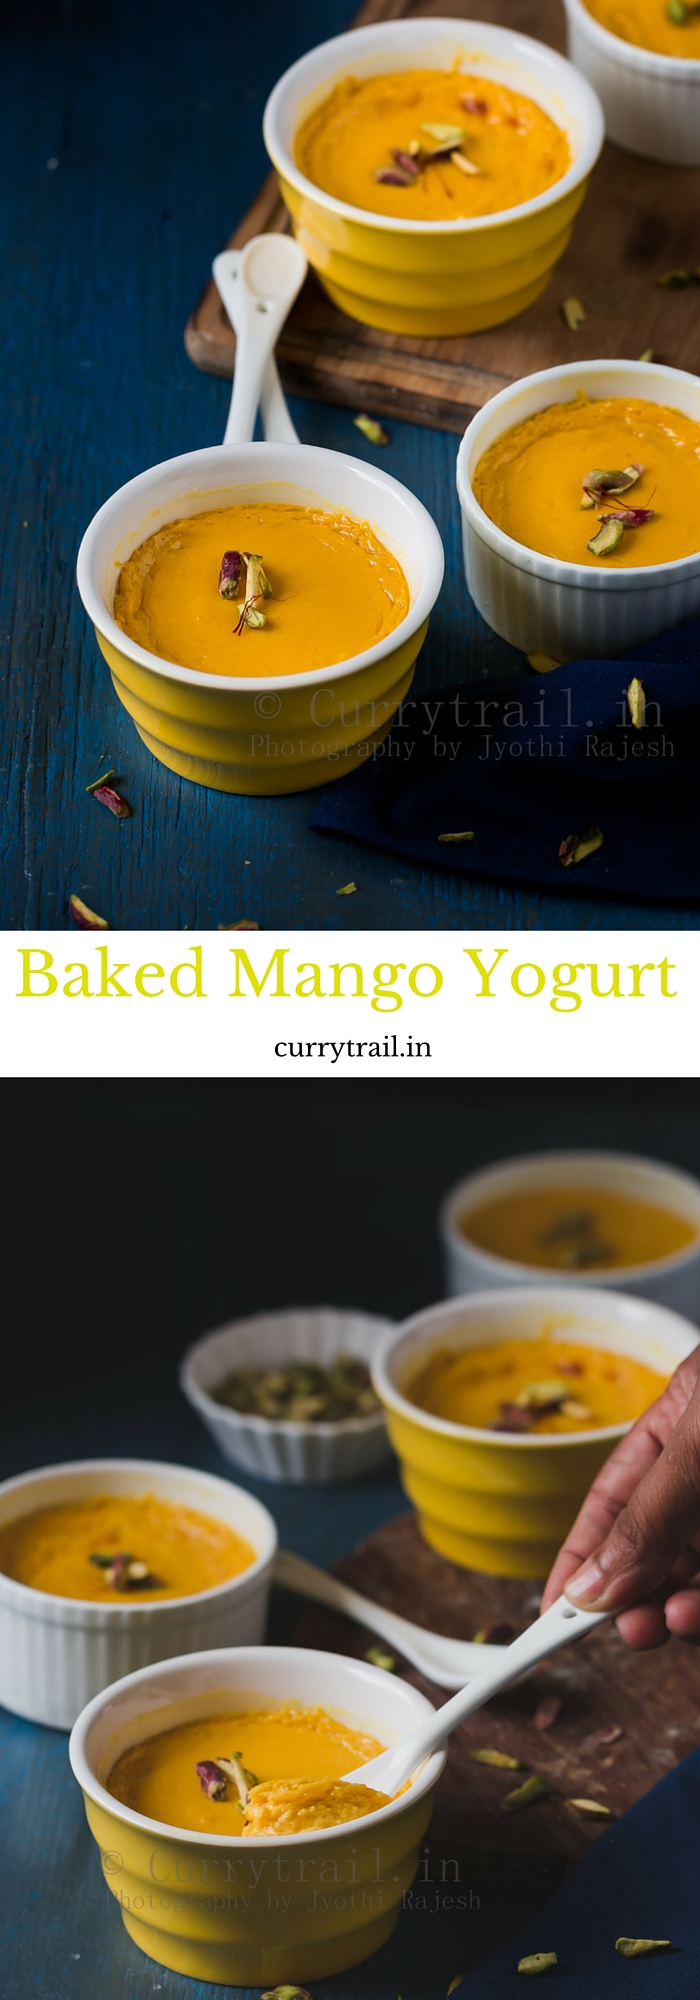 Baked Mango Yogurt